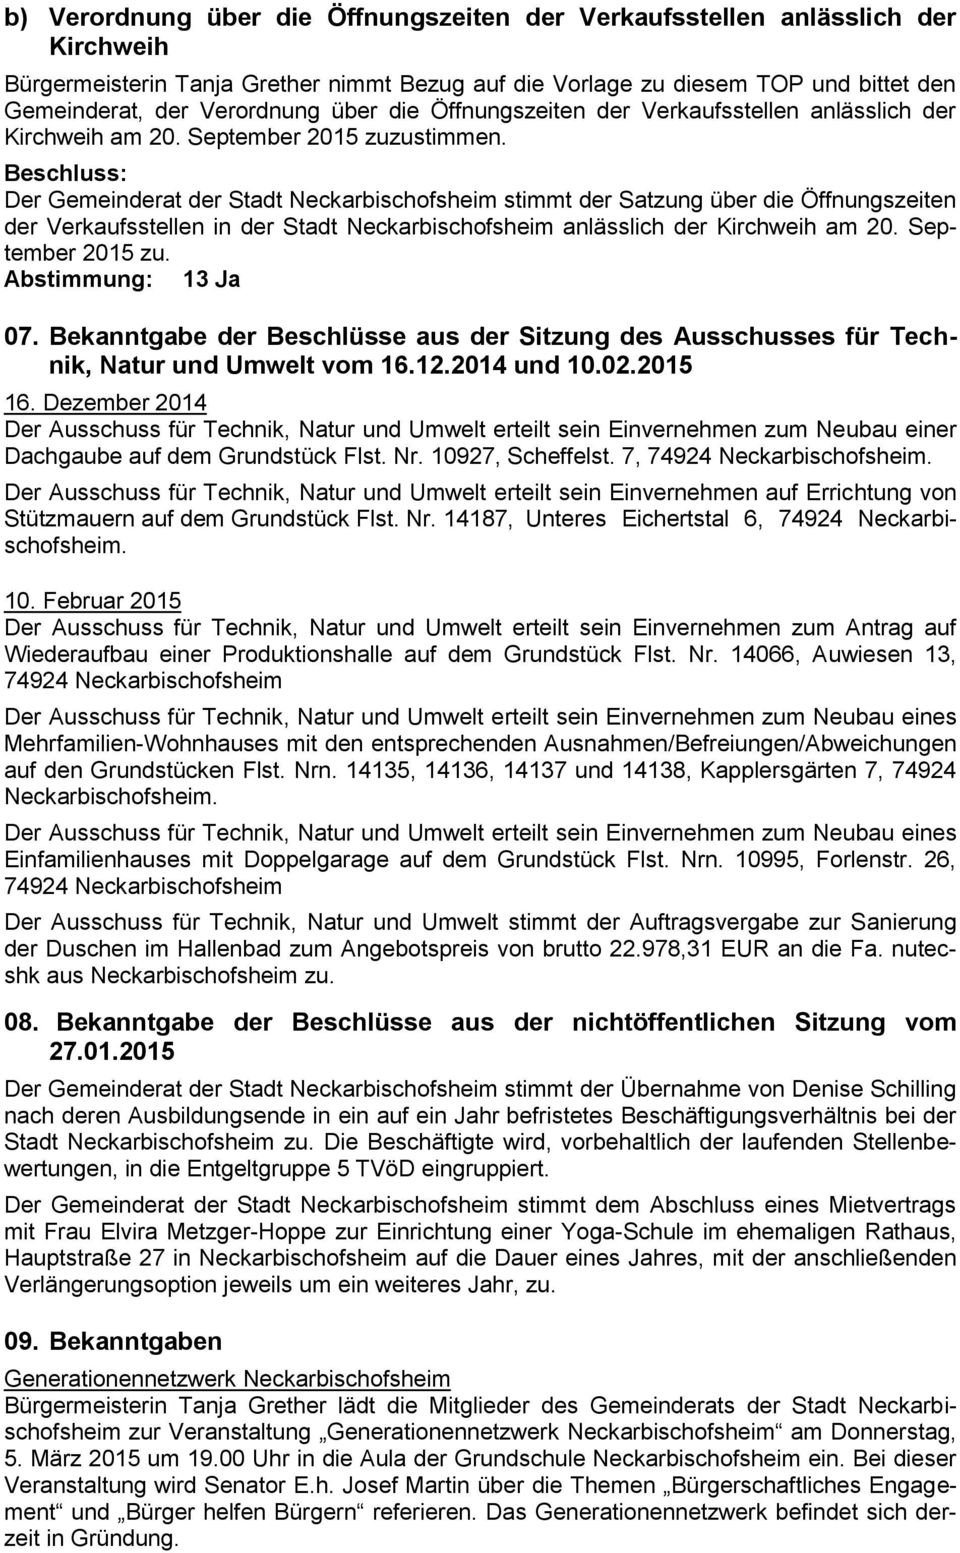 Der Gemeinderat der Stadt Neckarbischofsheim stimmt der Satzung über die Öffnungszeiten der Verkaufsstellen in der Stadt Neckarbischofsheim anlässlich der Kirchweih am 20. September 2015 zu. 07.